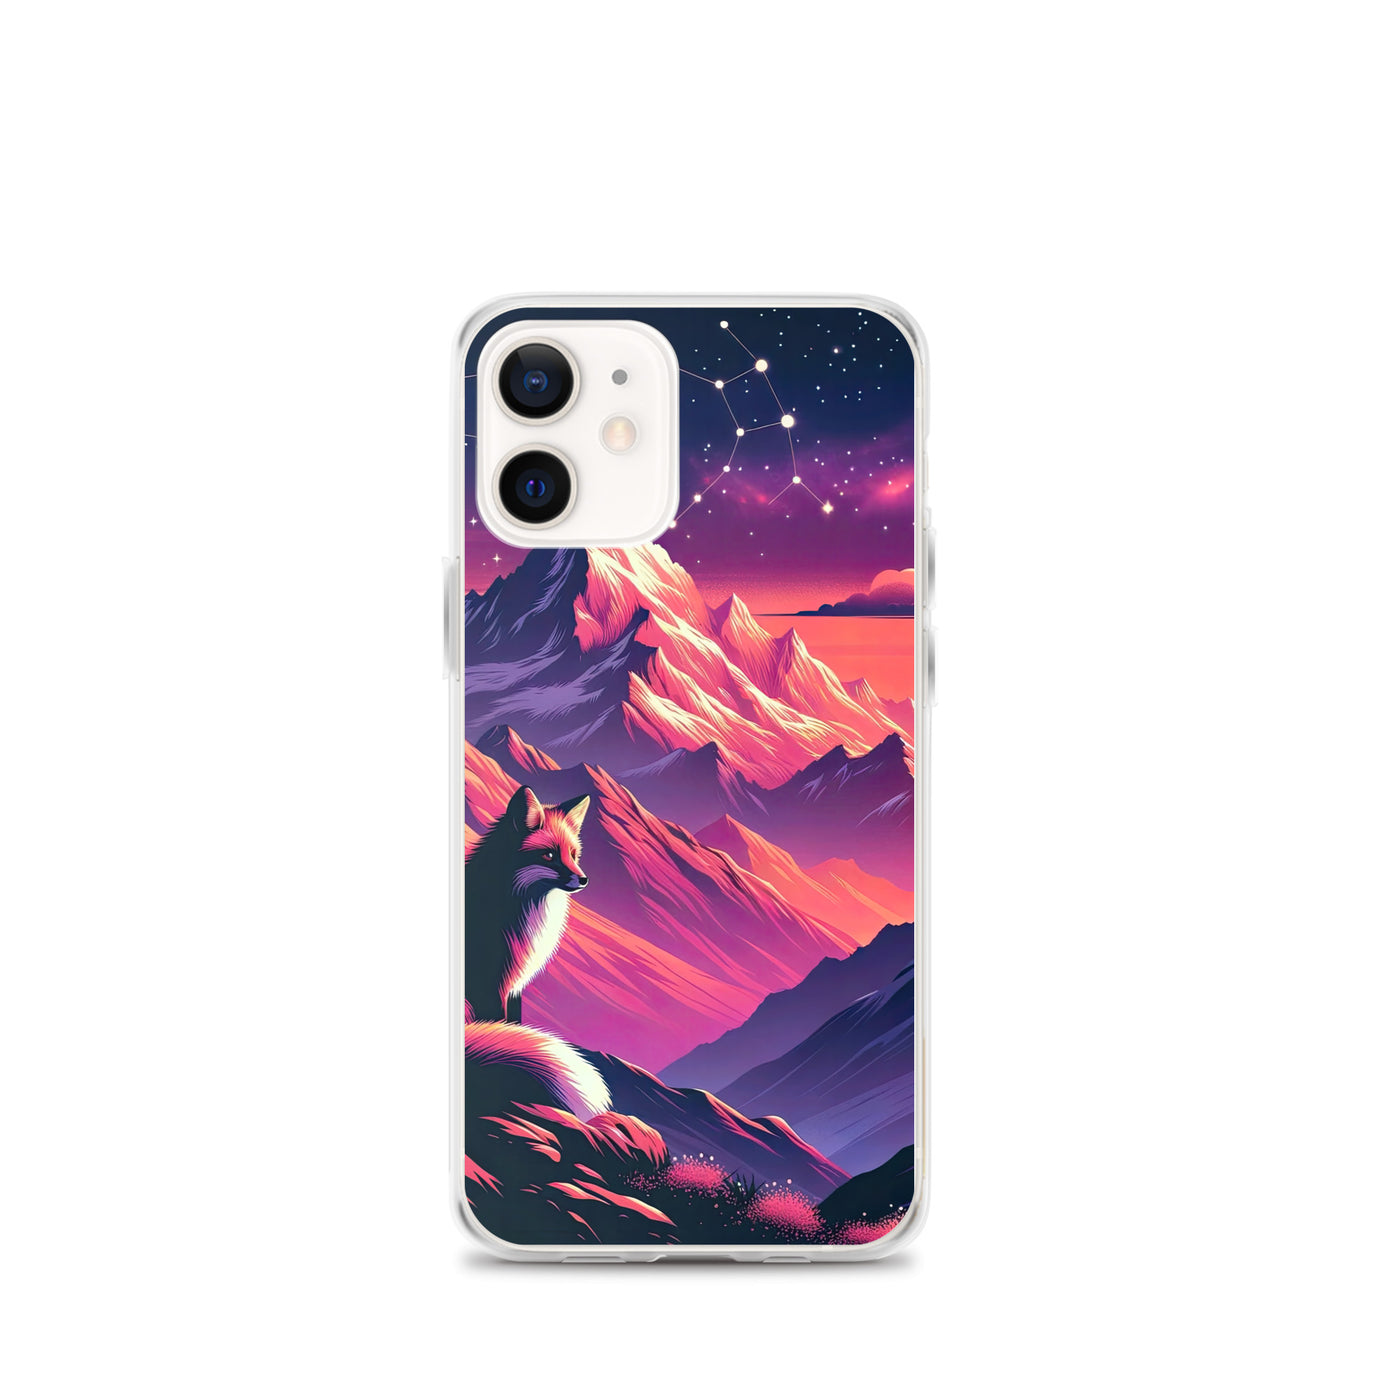 Fuchs im dramatischen Sonnenuntergang: Digitale Bergillustration in Abendfarben - iPhone Schutzhülle (durchsichtig) camping xxx yyy zzz iPhone 12 mini